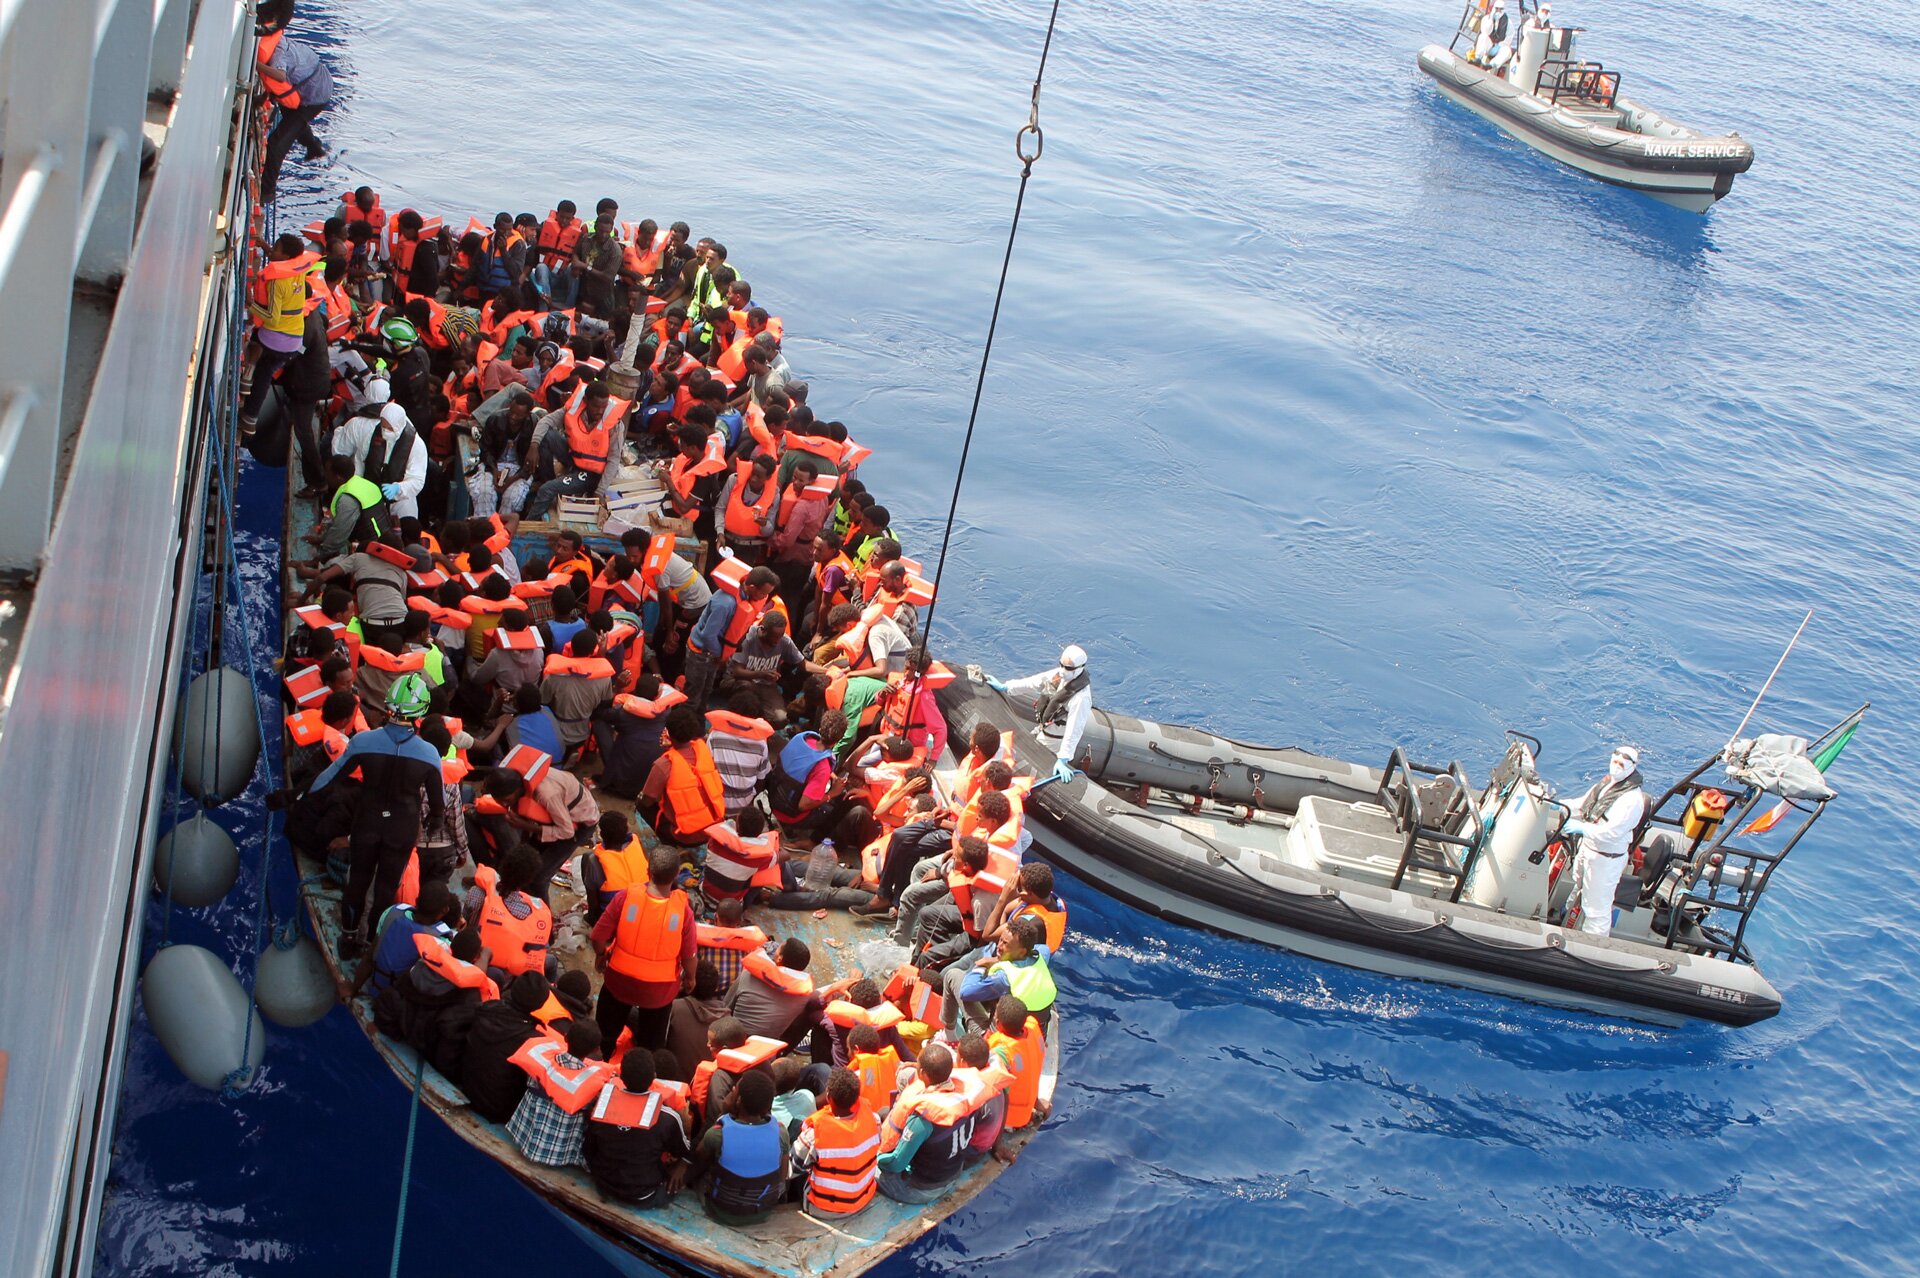 Na zdjęciu są uchodźcy w kapokach na łodzi ratunkowej u wybrzeży Włoch. Łódź ratunkowa znajduje się bezpośrednio przy bocznej ścianie ogromnego statku. Kilku z uchodźców jest w trakcie wsiadania na statek, wspinając się po drabince. Obok łodzi ratunkowej znajduje się motorówka z dwoma pracownikami w kombinezonach ochronnych na niej. W tle widoczne jest morze i druga motorówka.